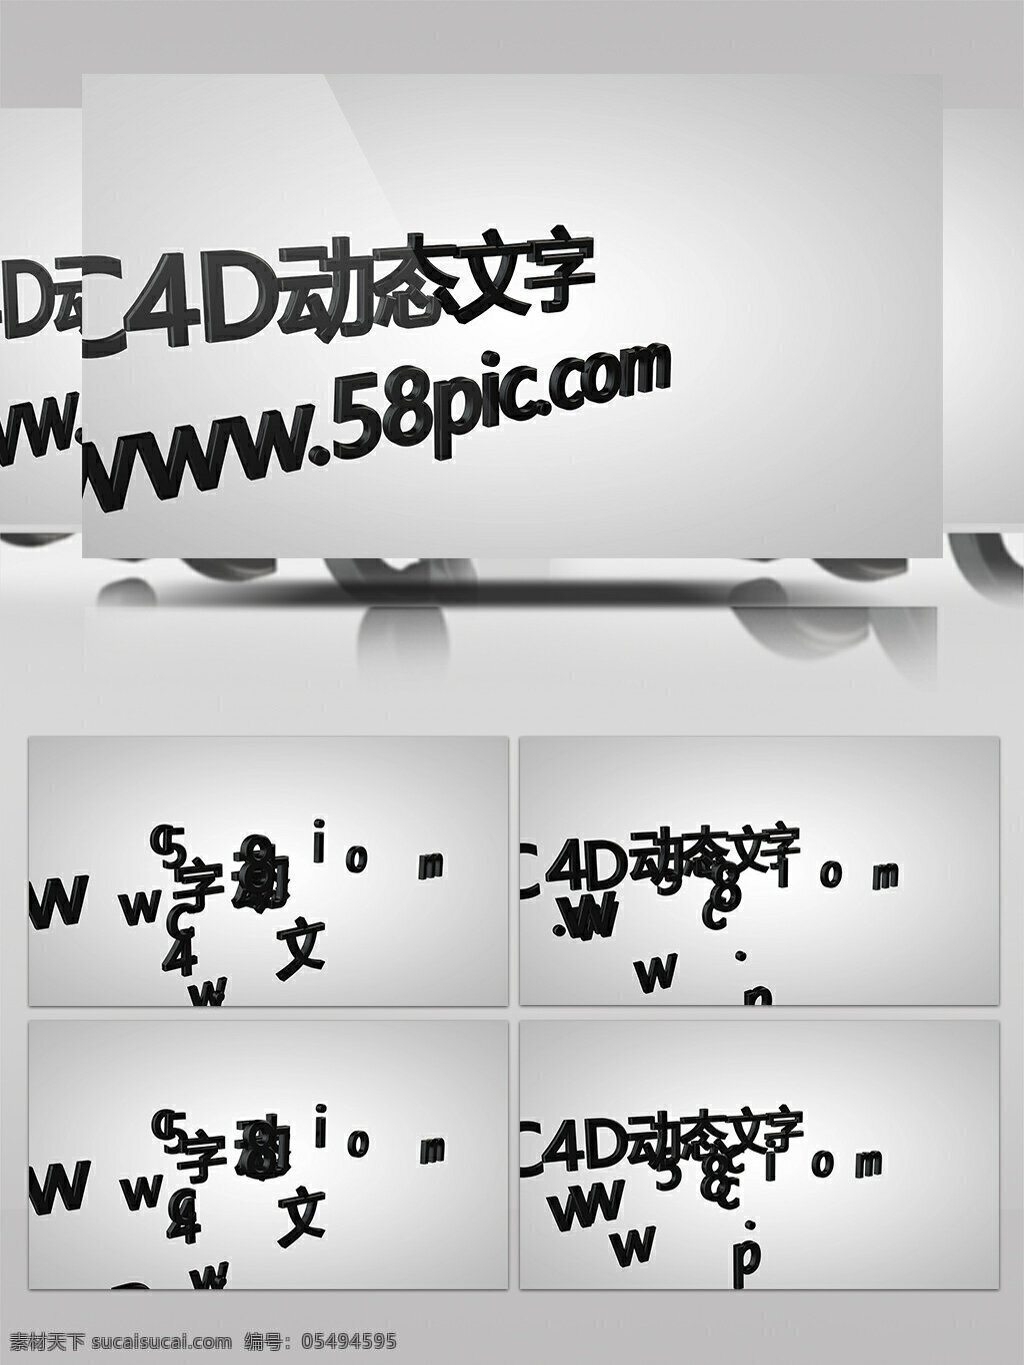 演绎 三维 运动 文字 动画 c4d 模板 卡通3d 影视后期 展示 宣传 片头片尾 宣传推广 可修改模板 节奏动感 c4d模板